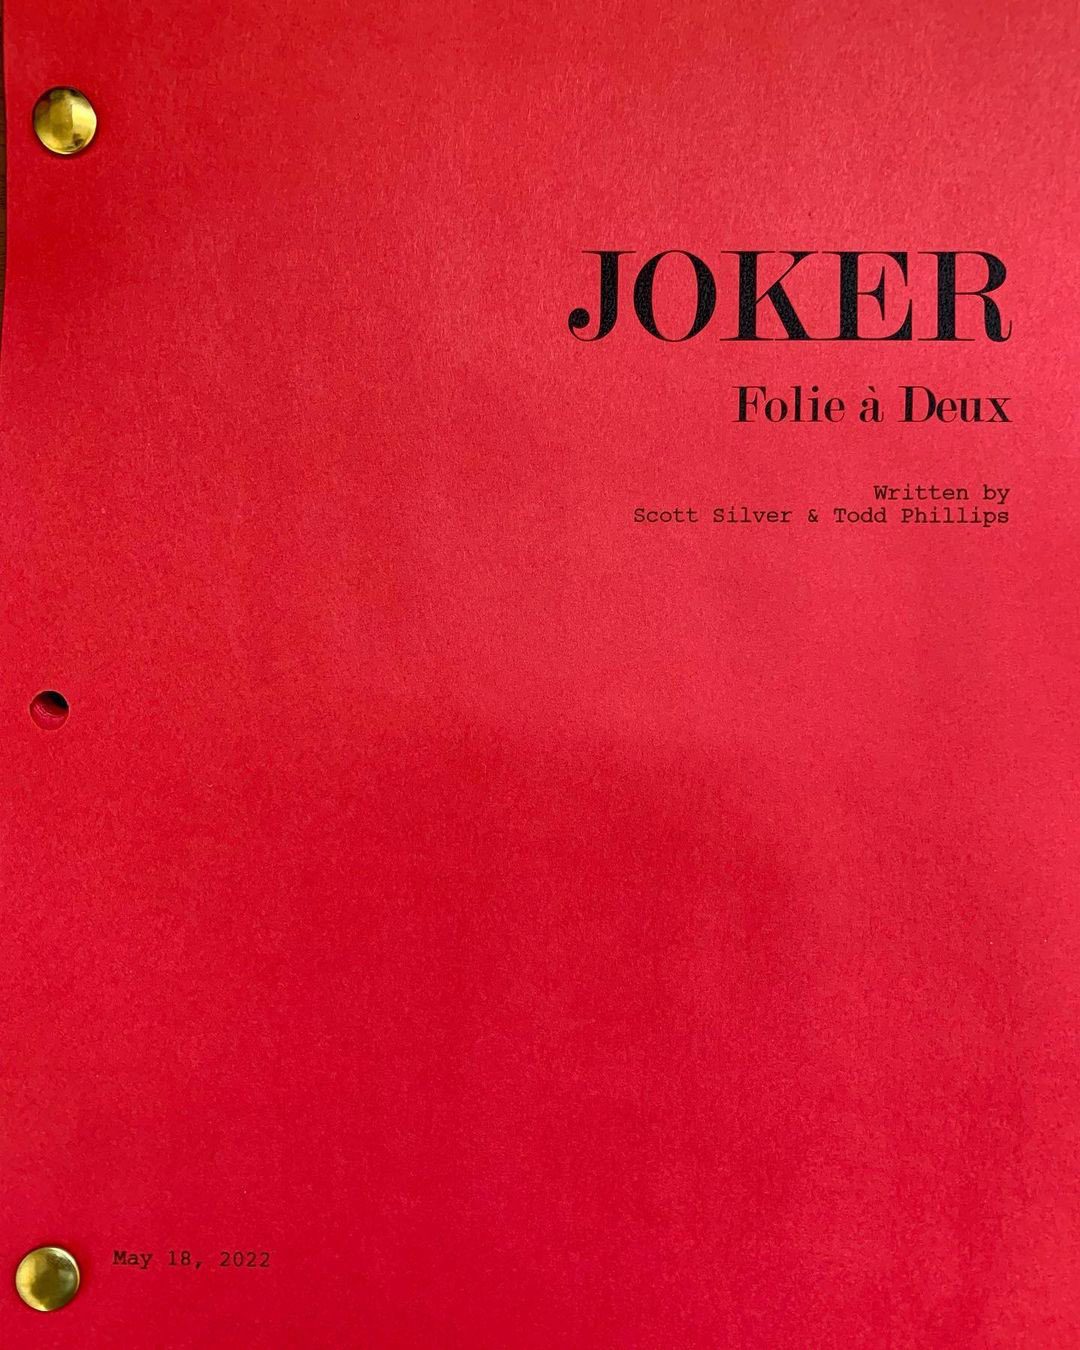 Joker 2 Confirmed